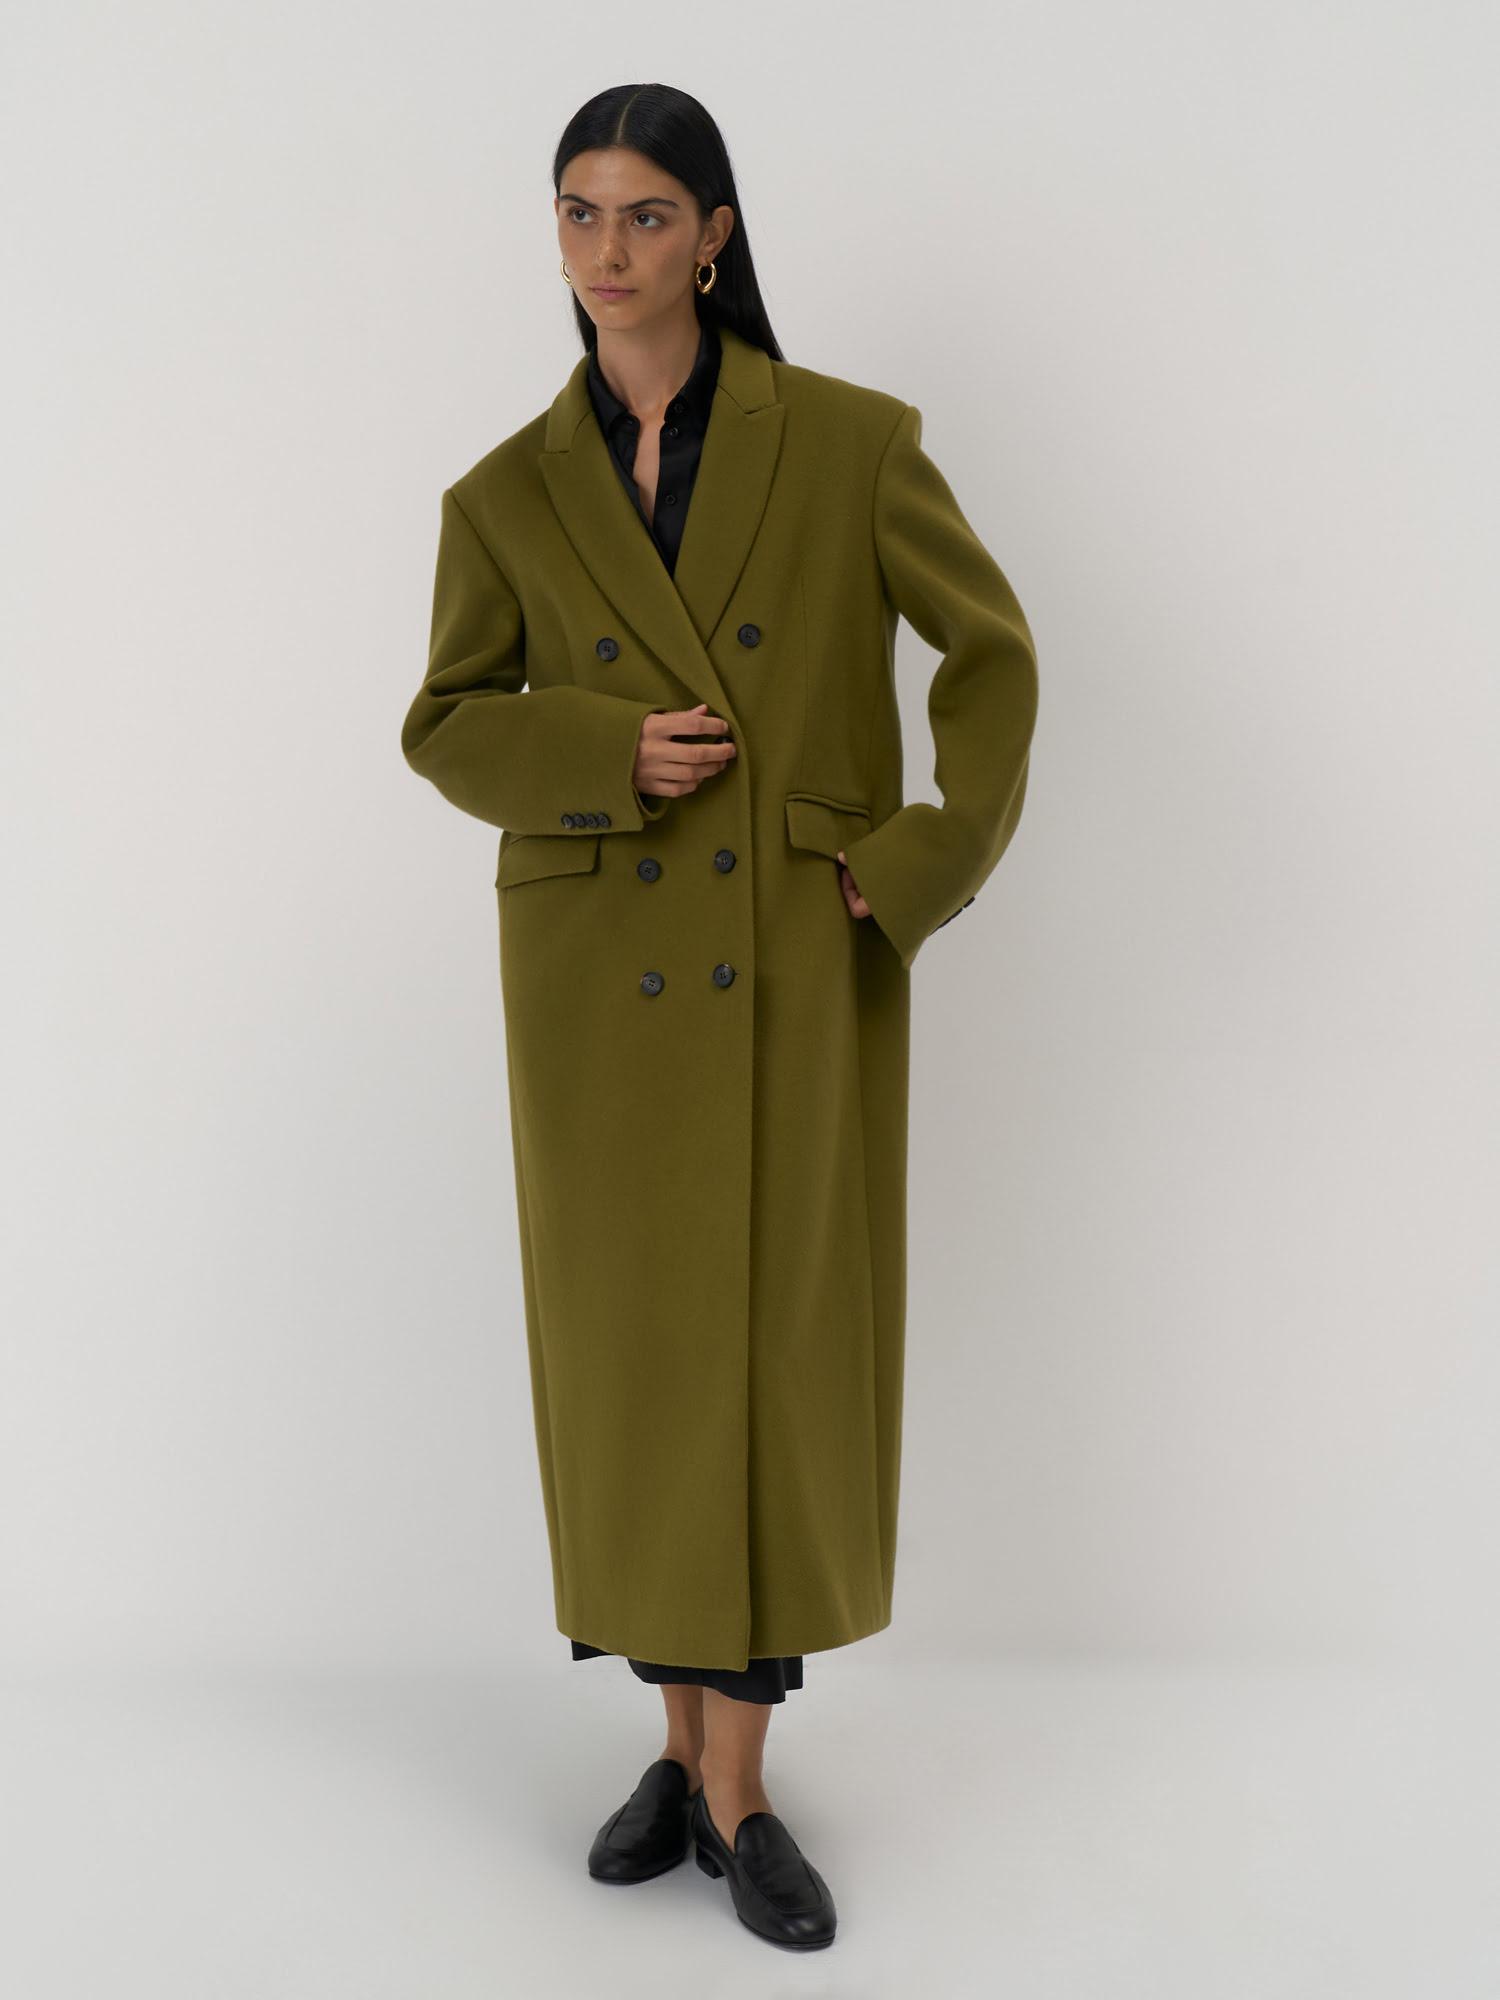 Пальто Pure Cashmere из итальянского кашемира, Present &amp; Simple, 129 000 руб. (presentandsimple.com)